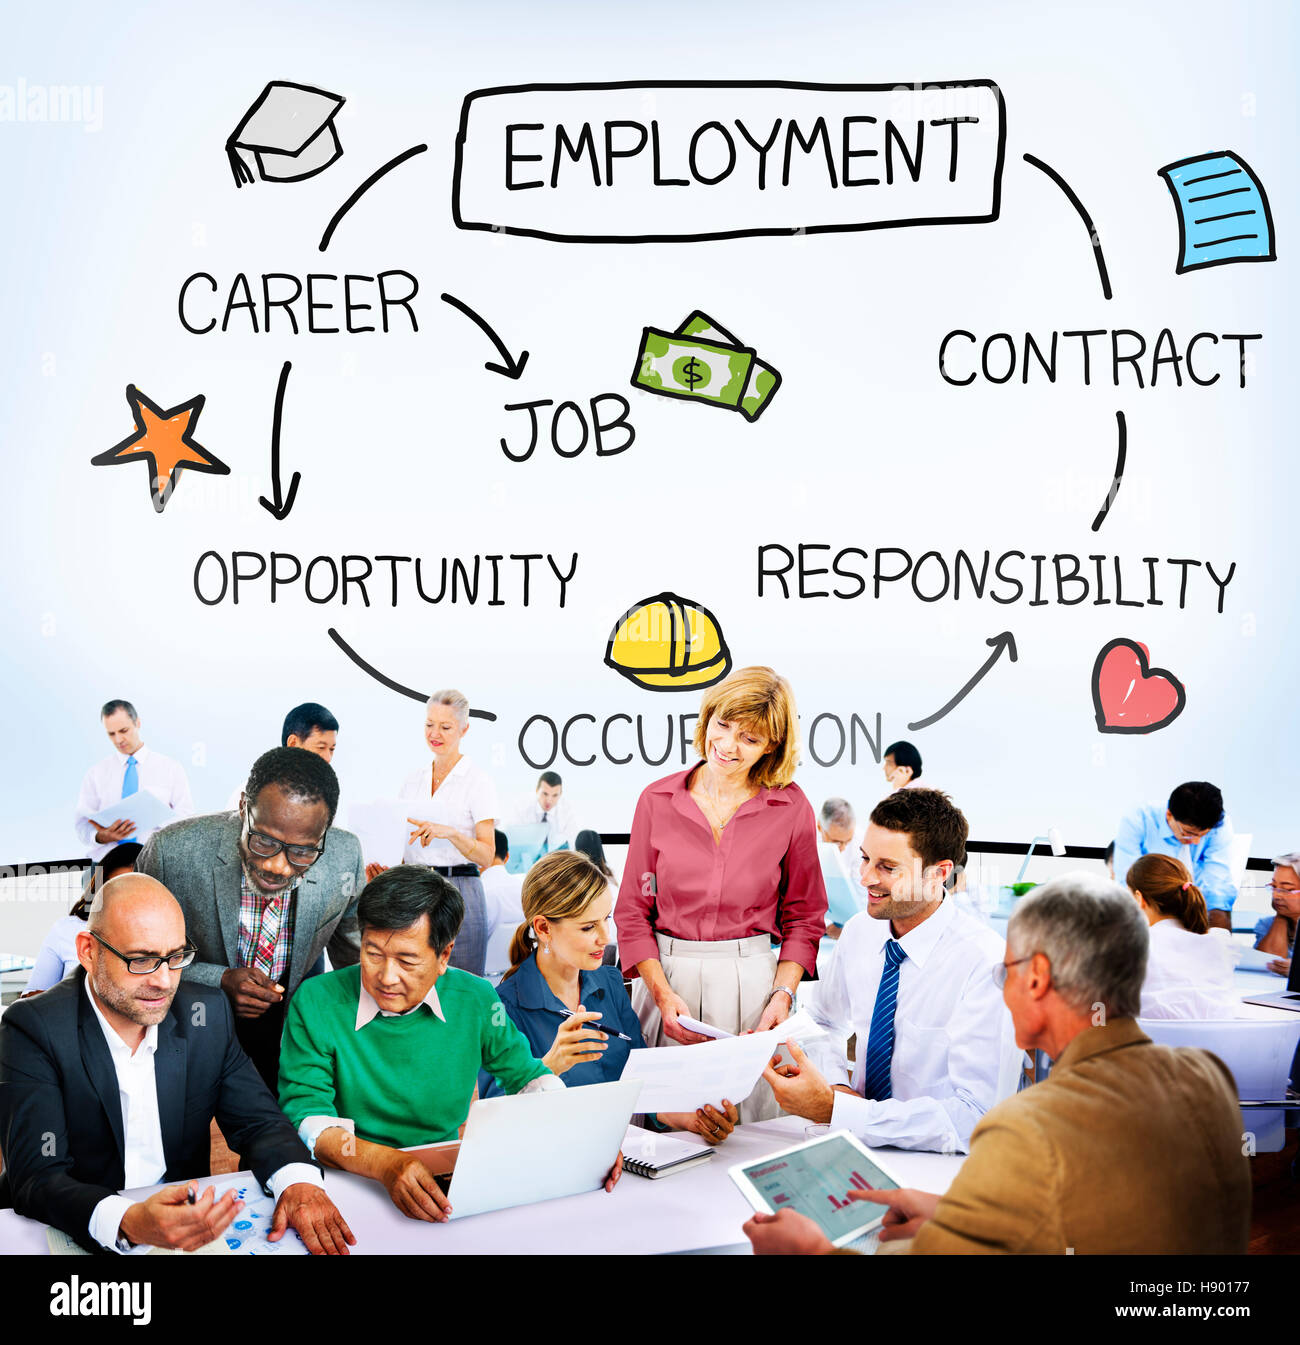 Beschäftigung Karriere Beruf Job Vertrag Konzept Stockfoto